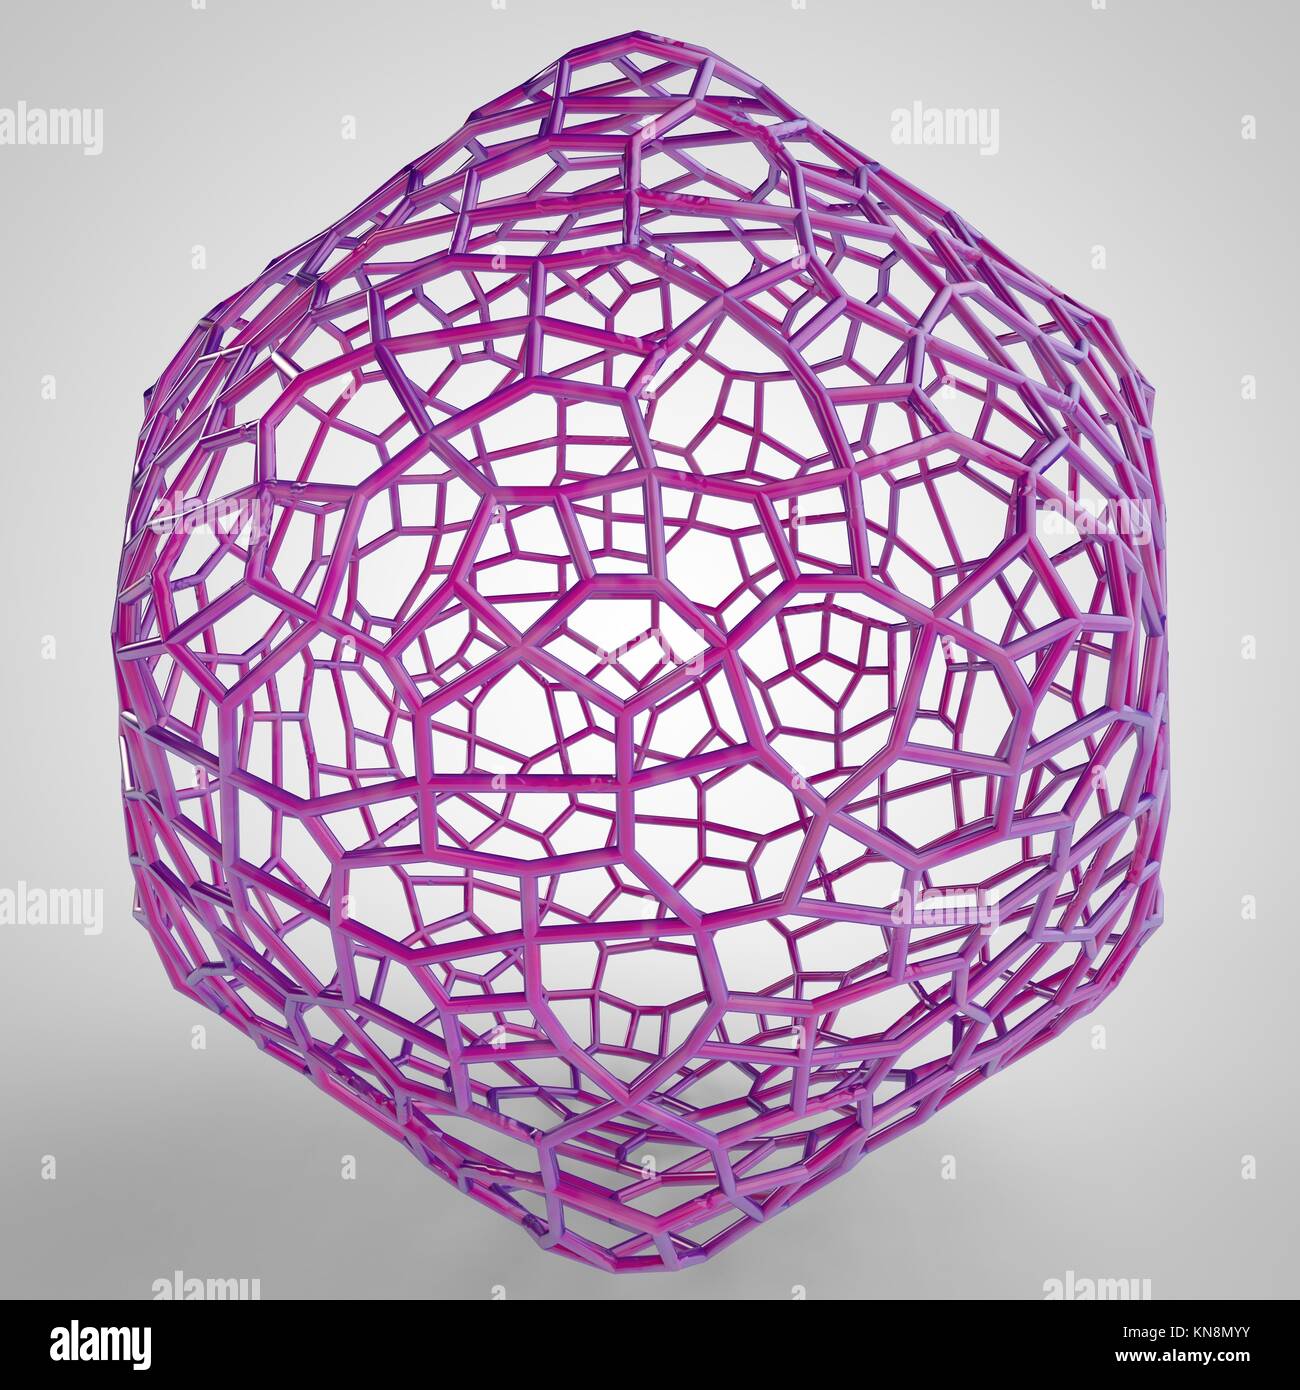 Ilustración 3D de globe modelo de malla de conexión. Foto de stock